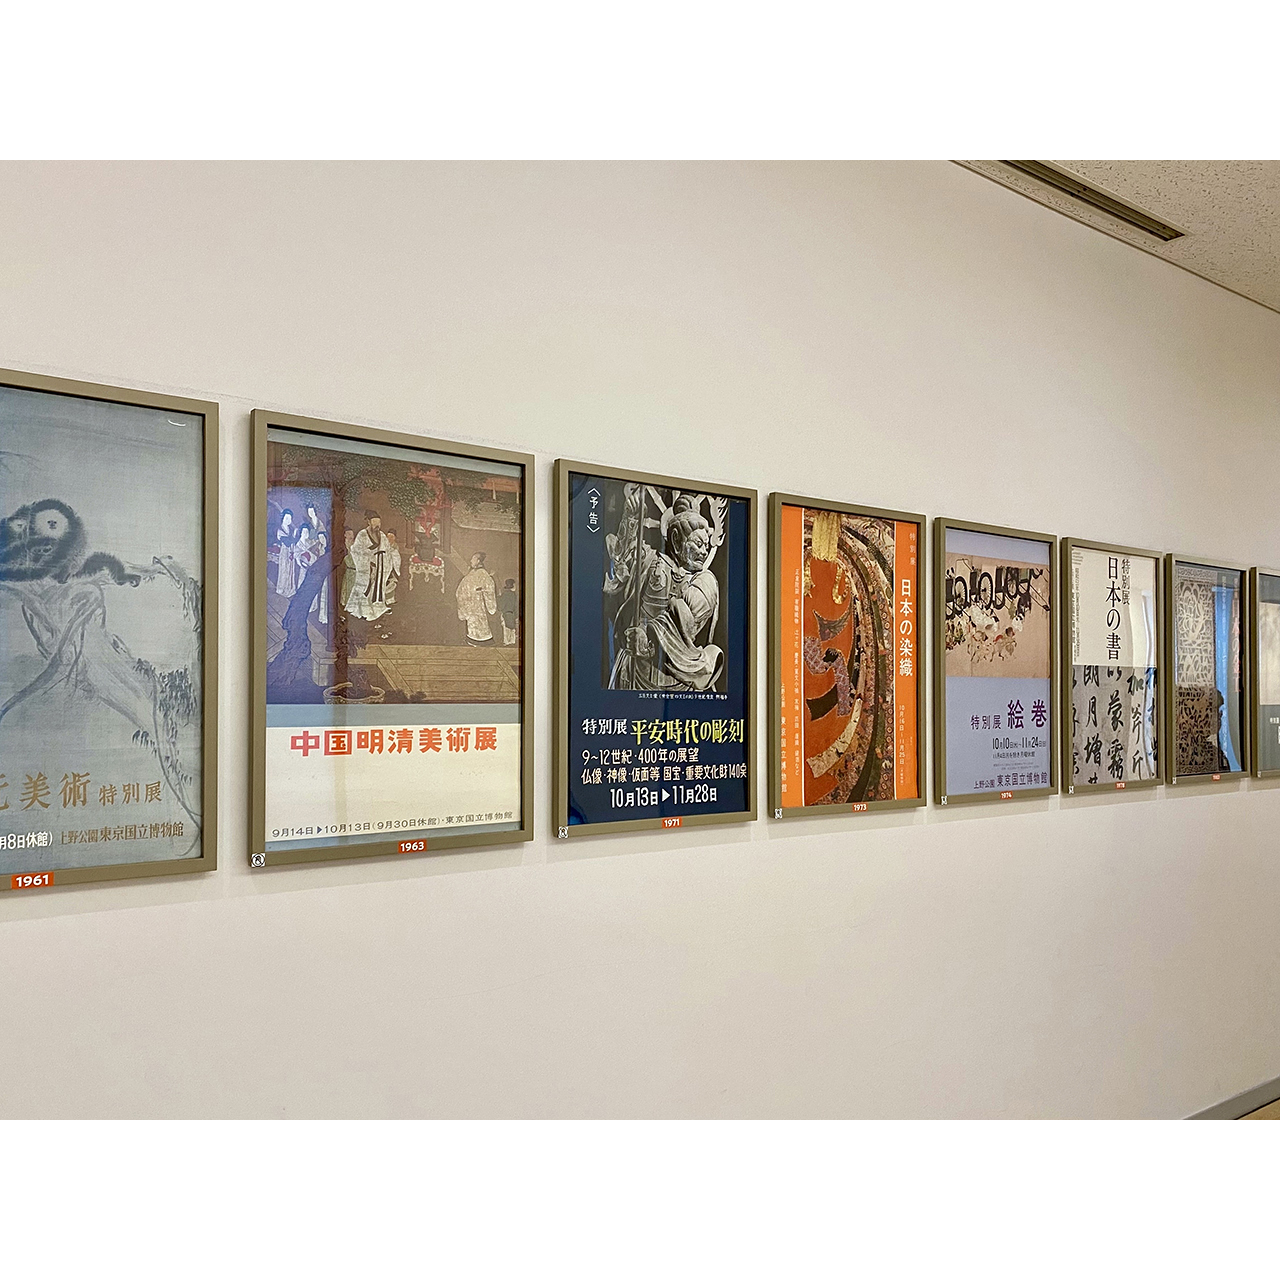 展覧会ポスターでたどる東博の歴史